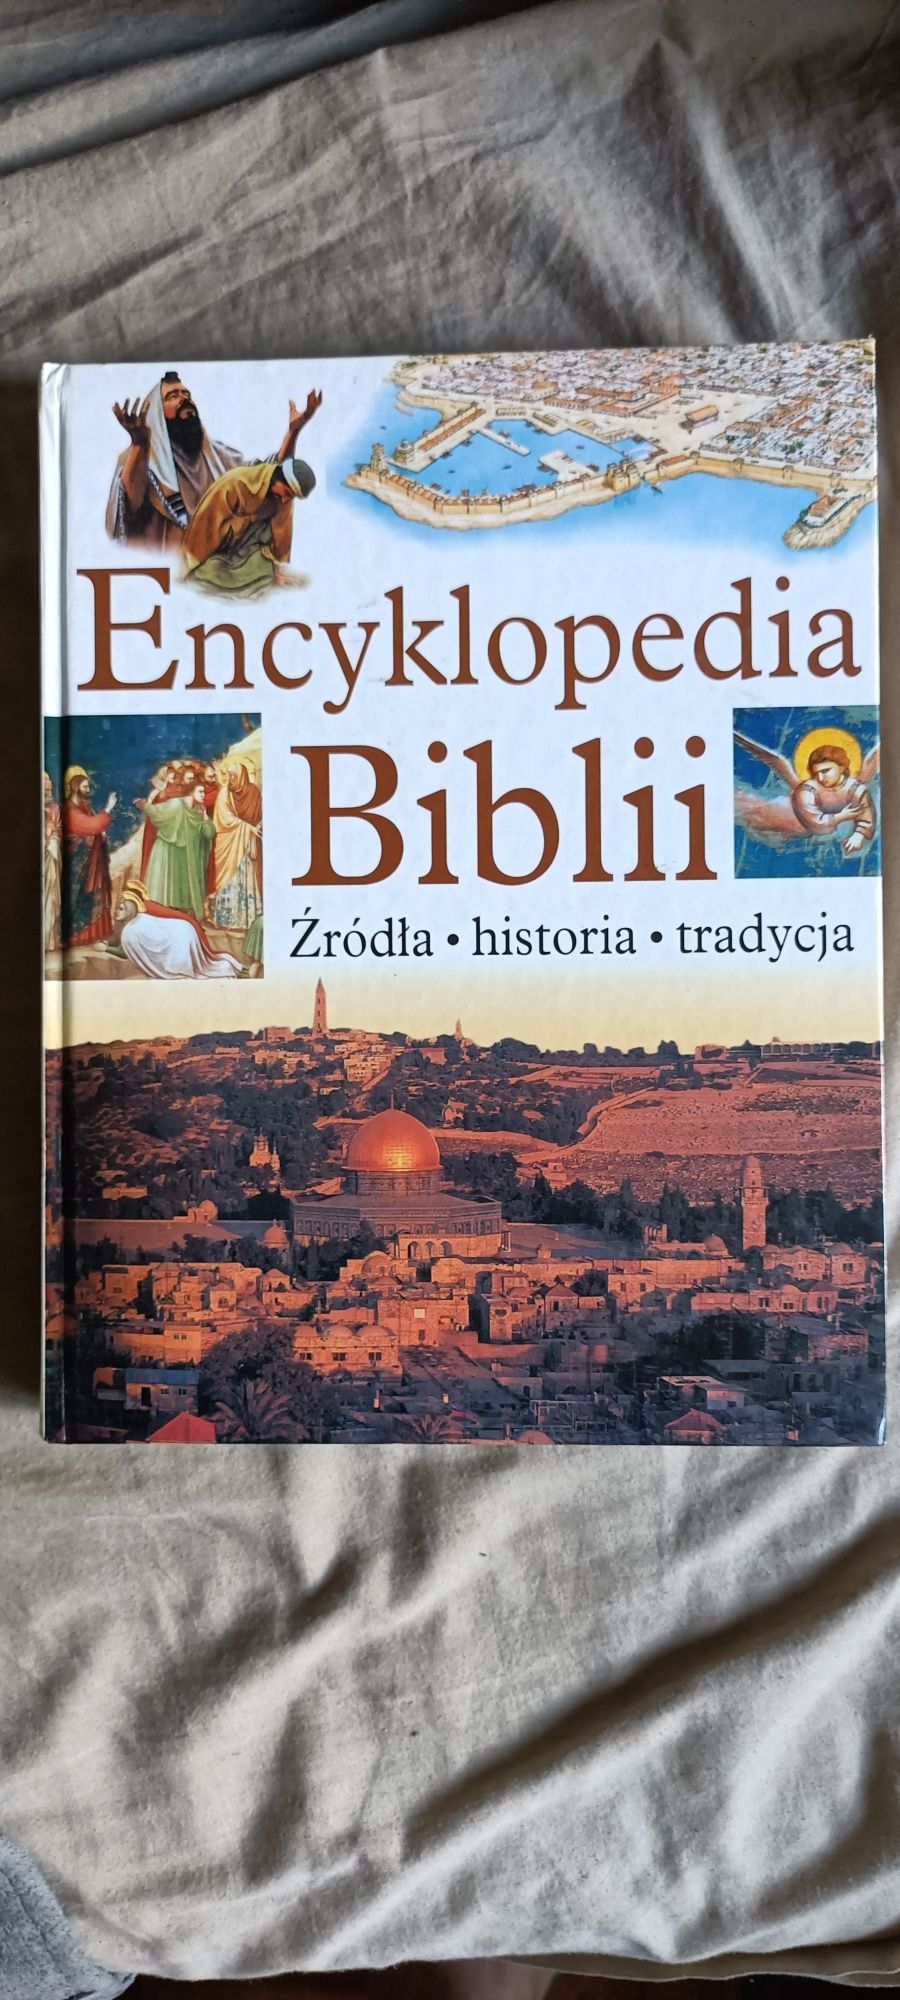 Encyklopedia Biblii źródła , historia , tradycja